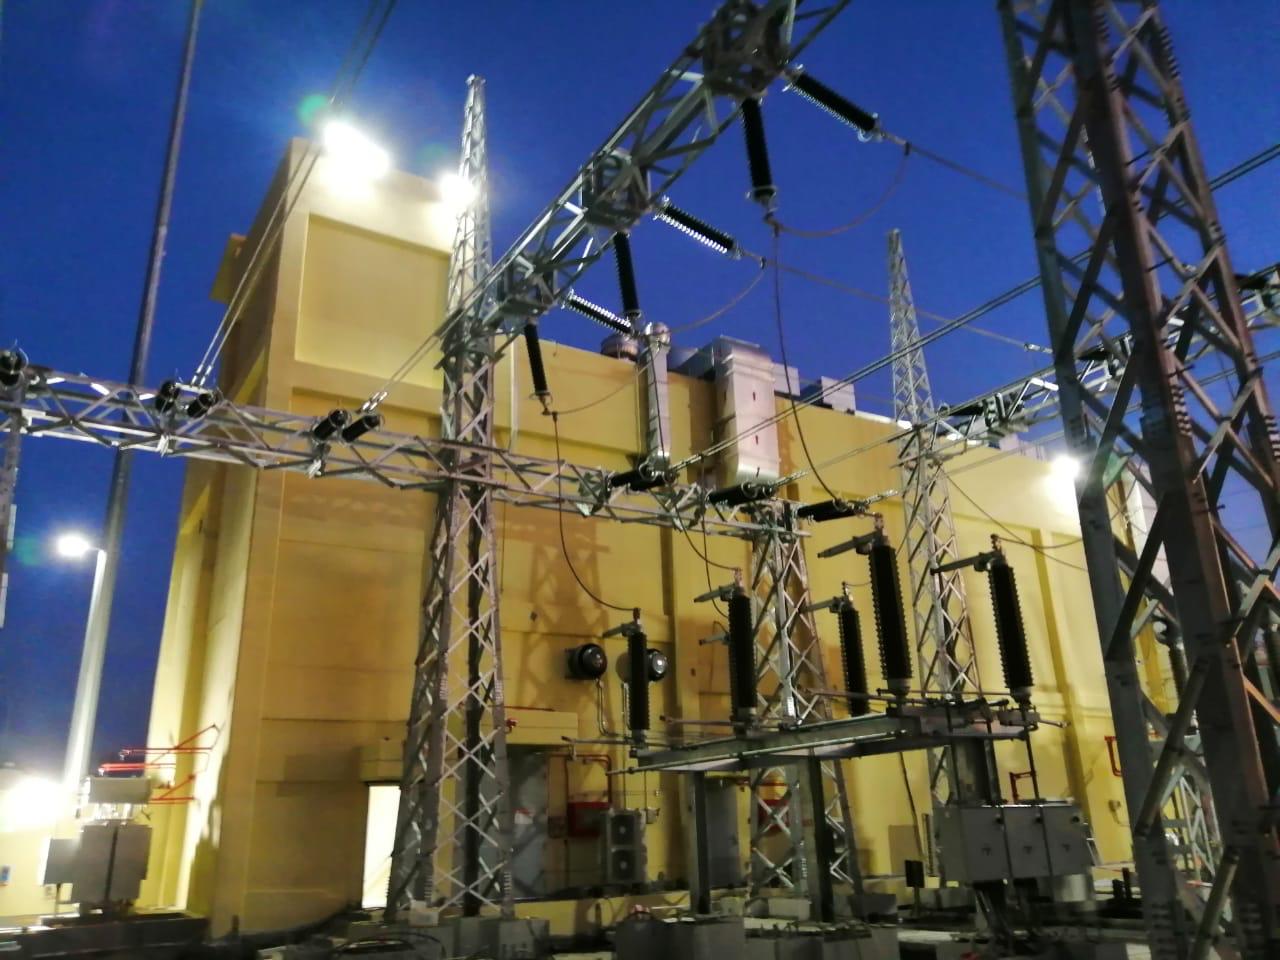 إنجاز مشروع رفع الطاقة الاستيعابية لمحطة عرفات1، بمقدار 134 م